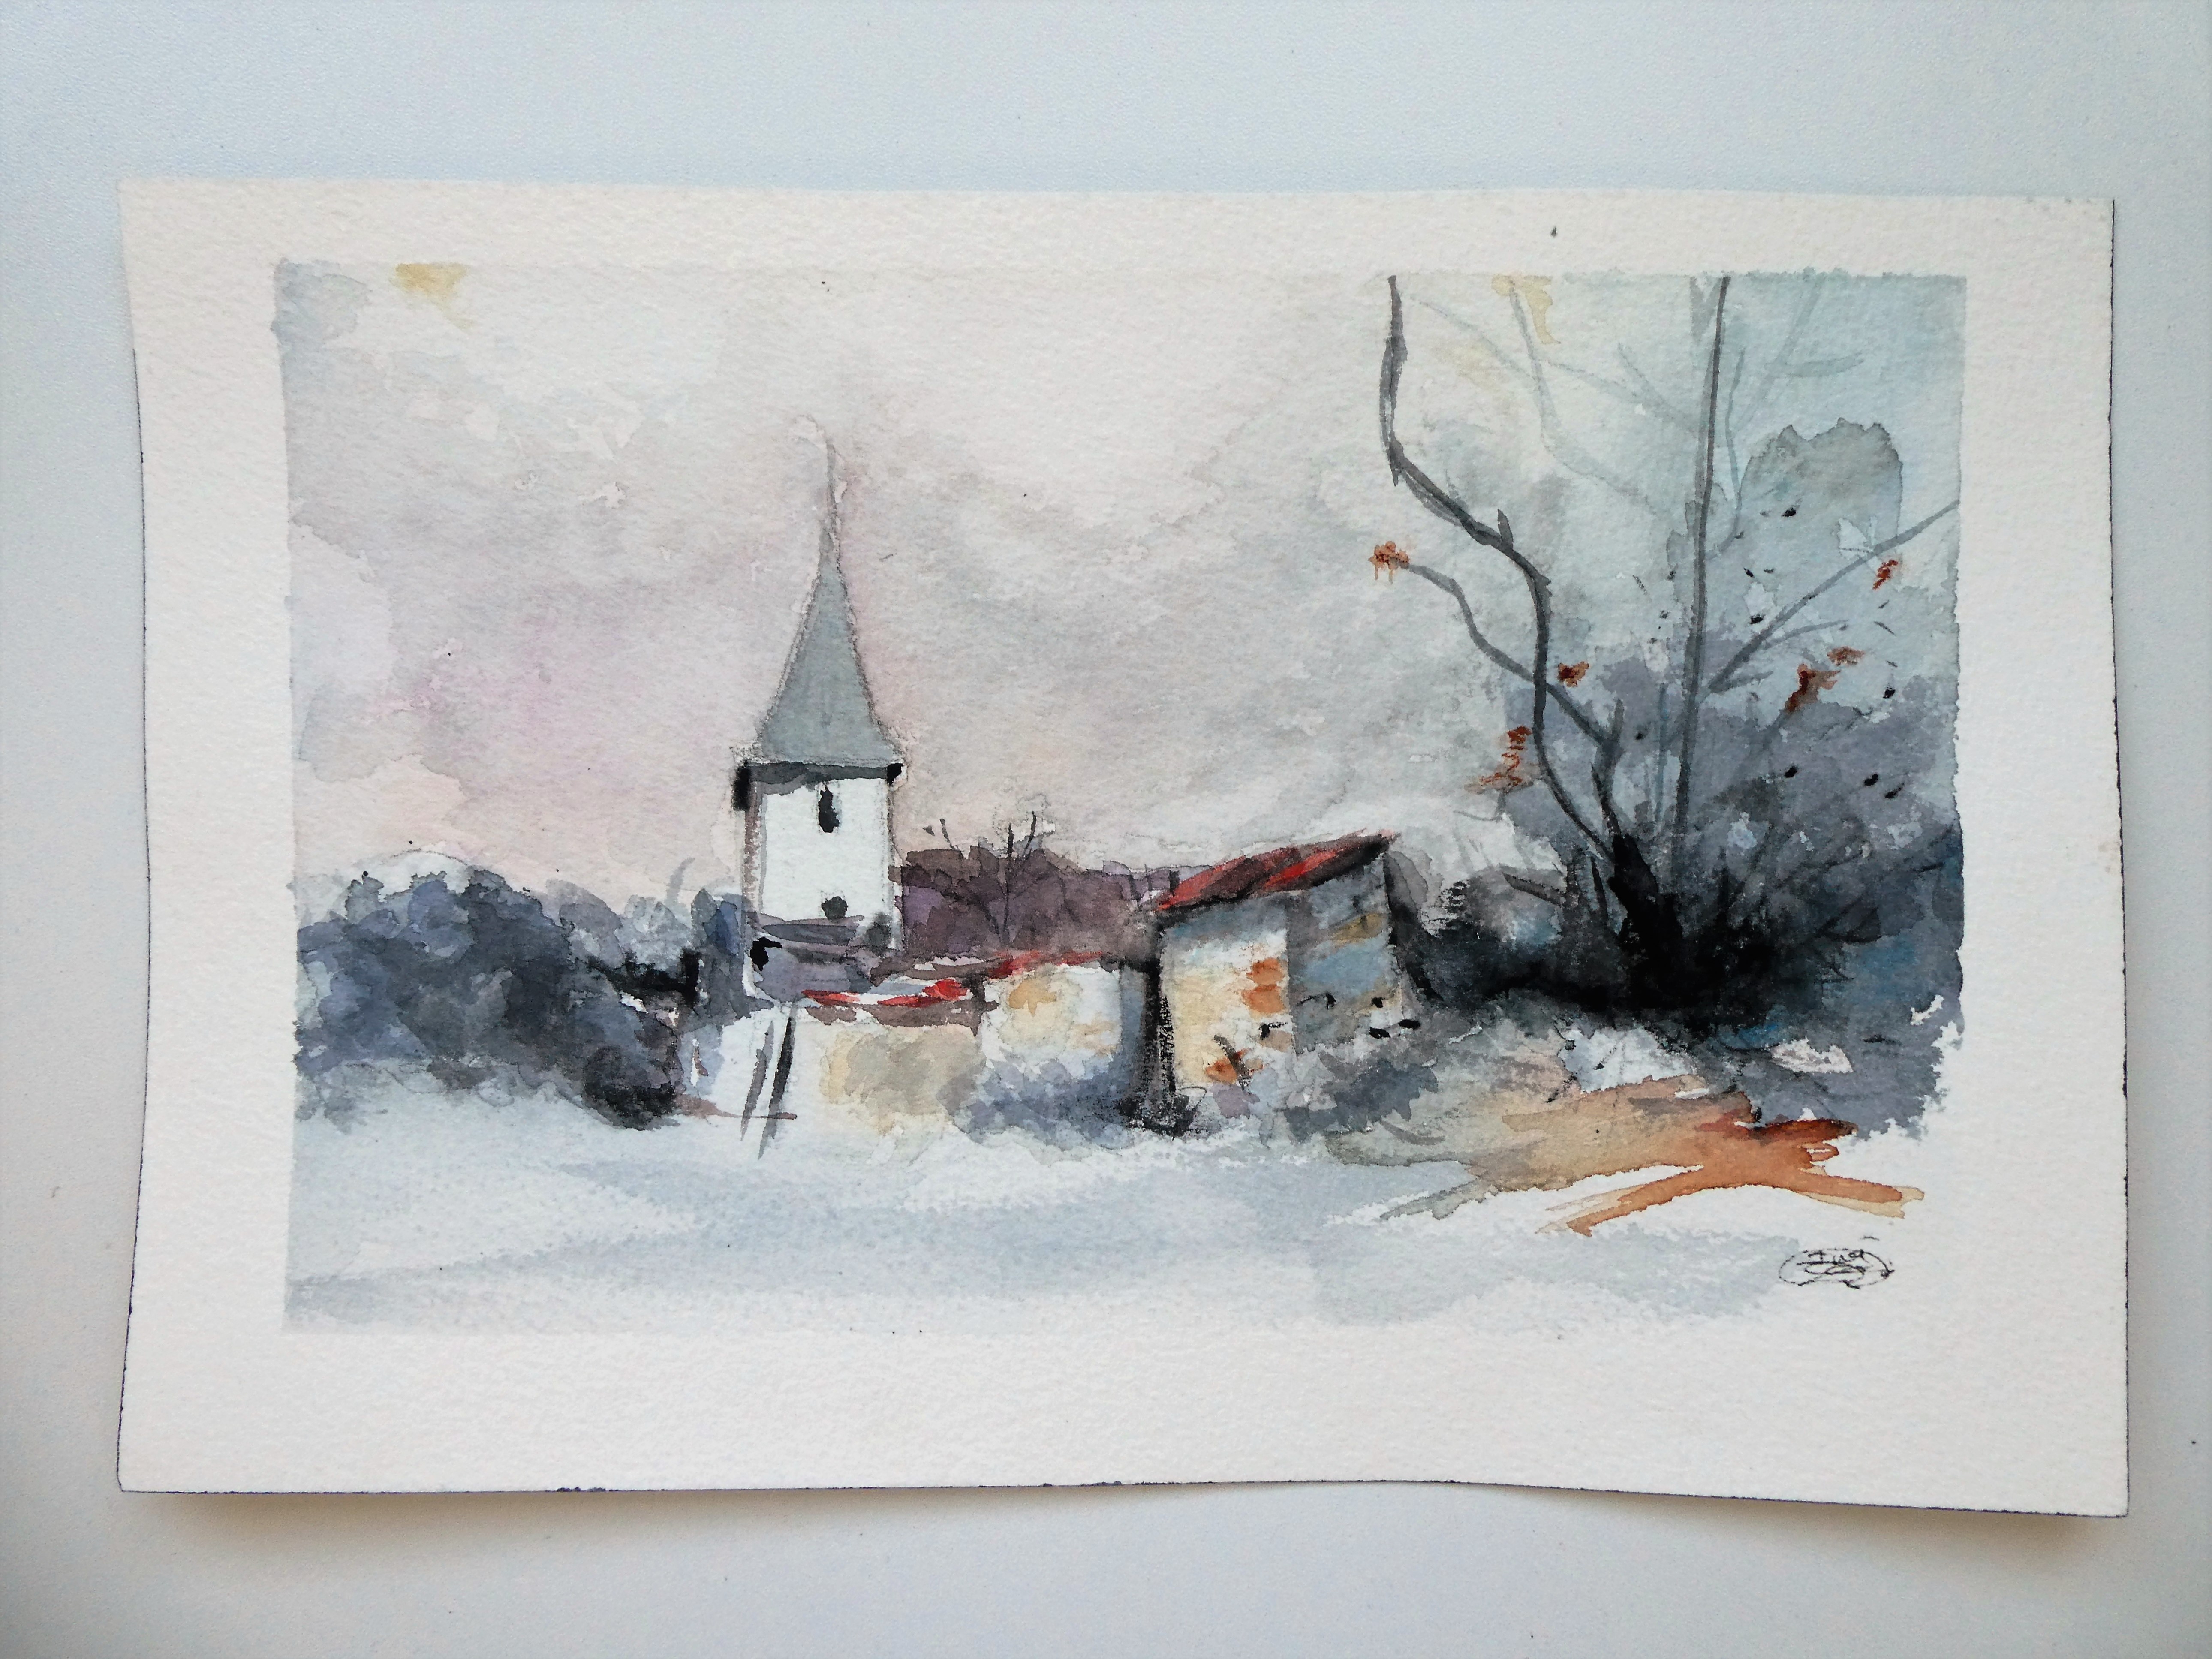 Snowy village landscape in watercolor